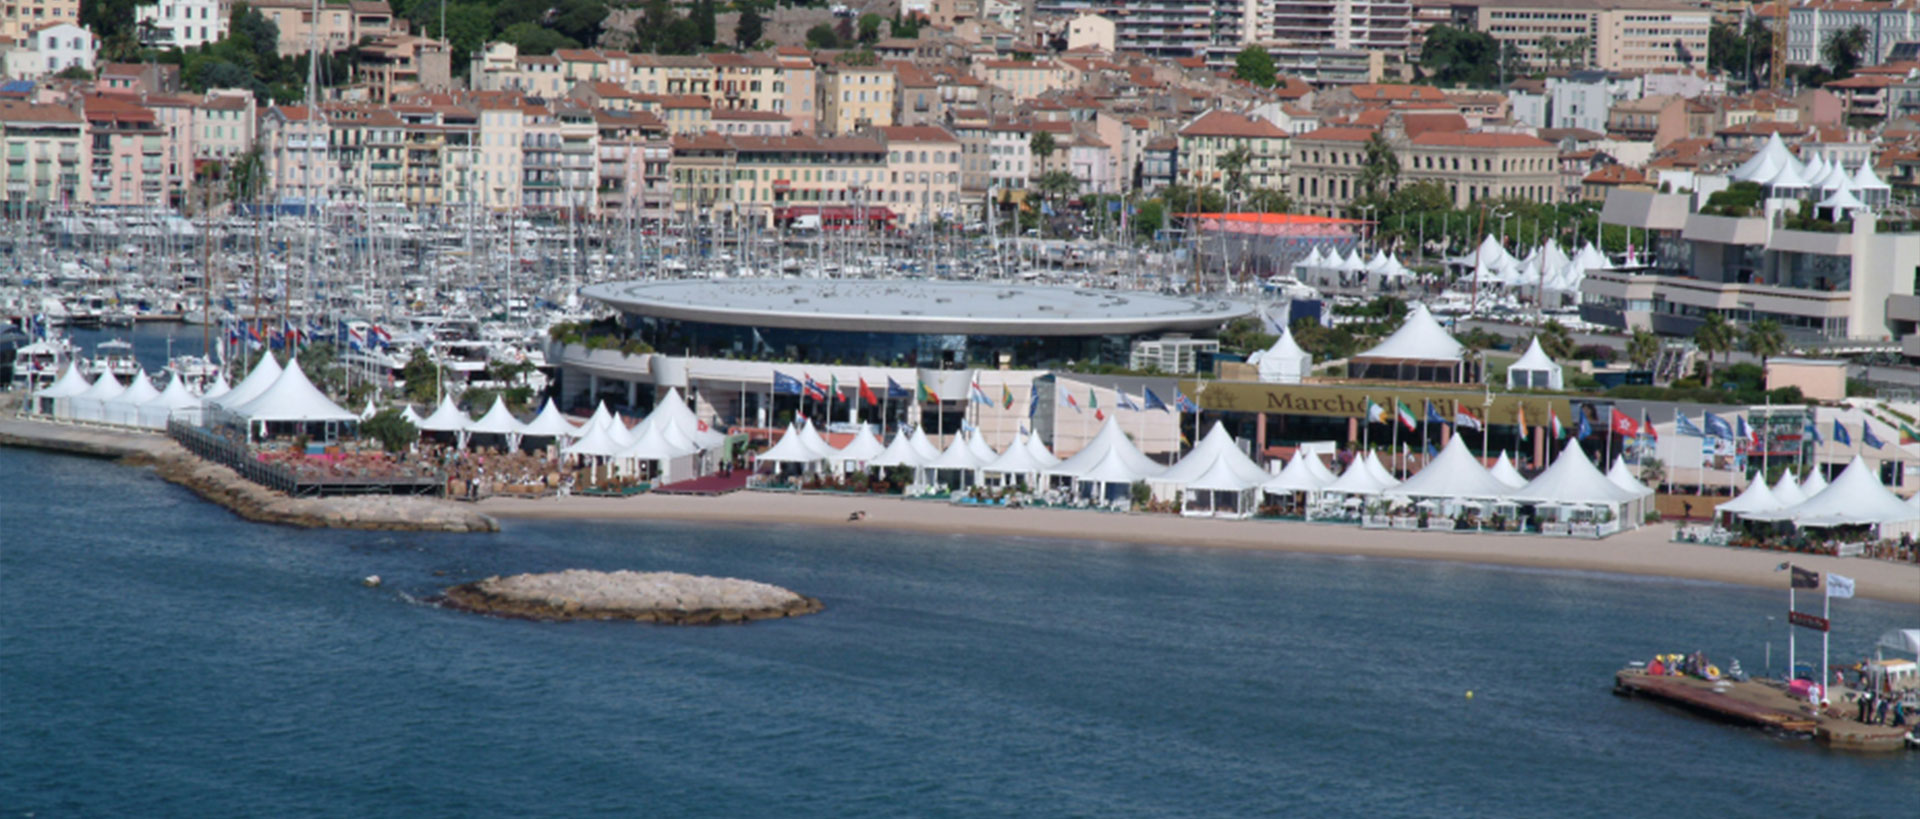  Festival de Cannes